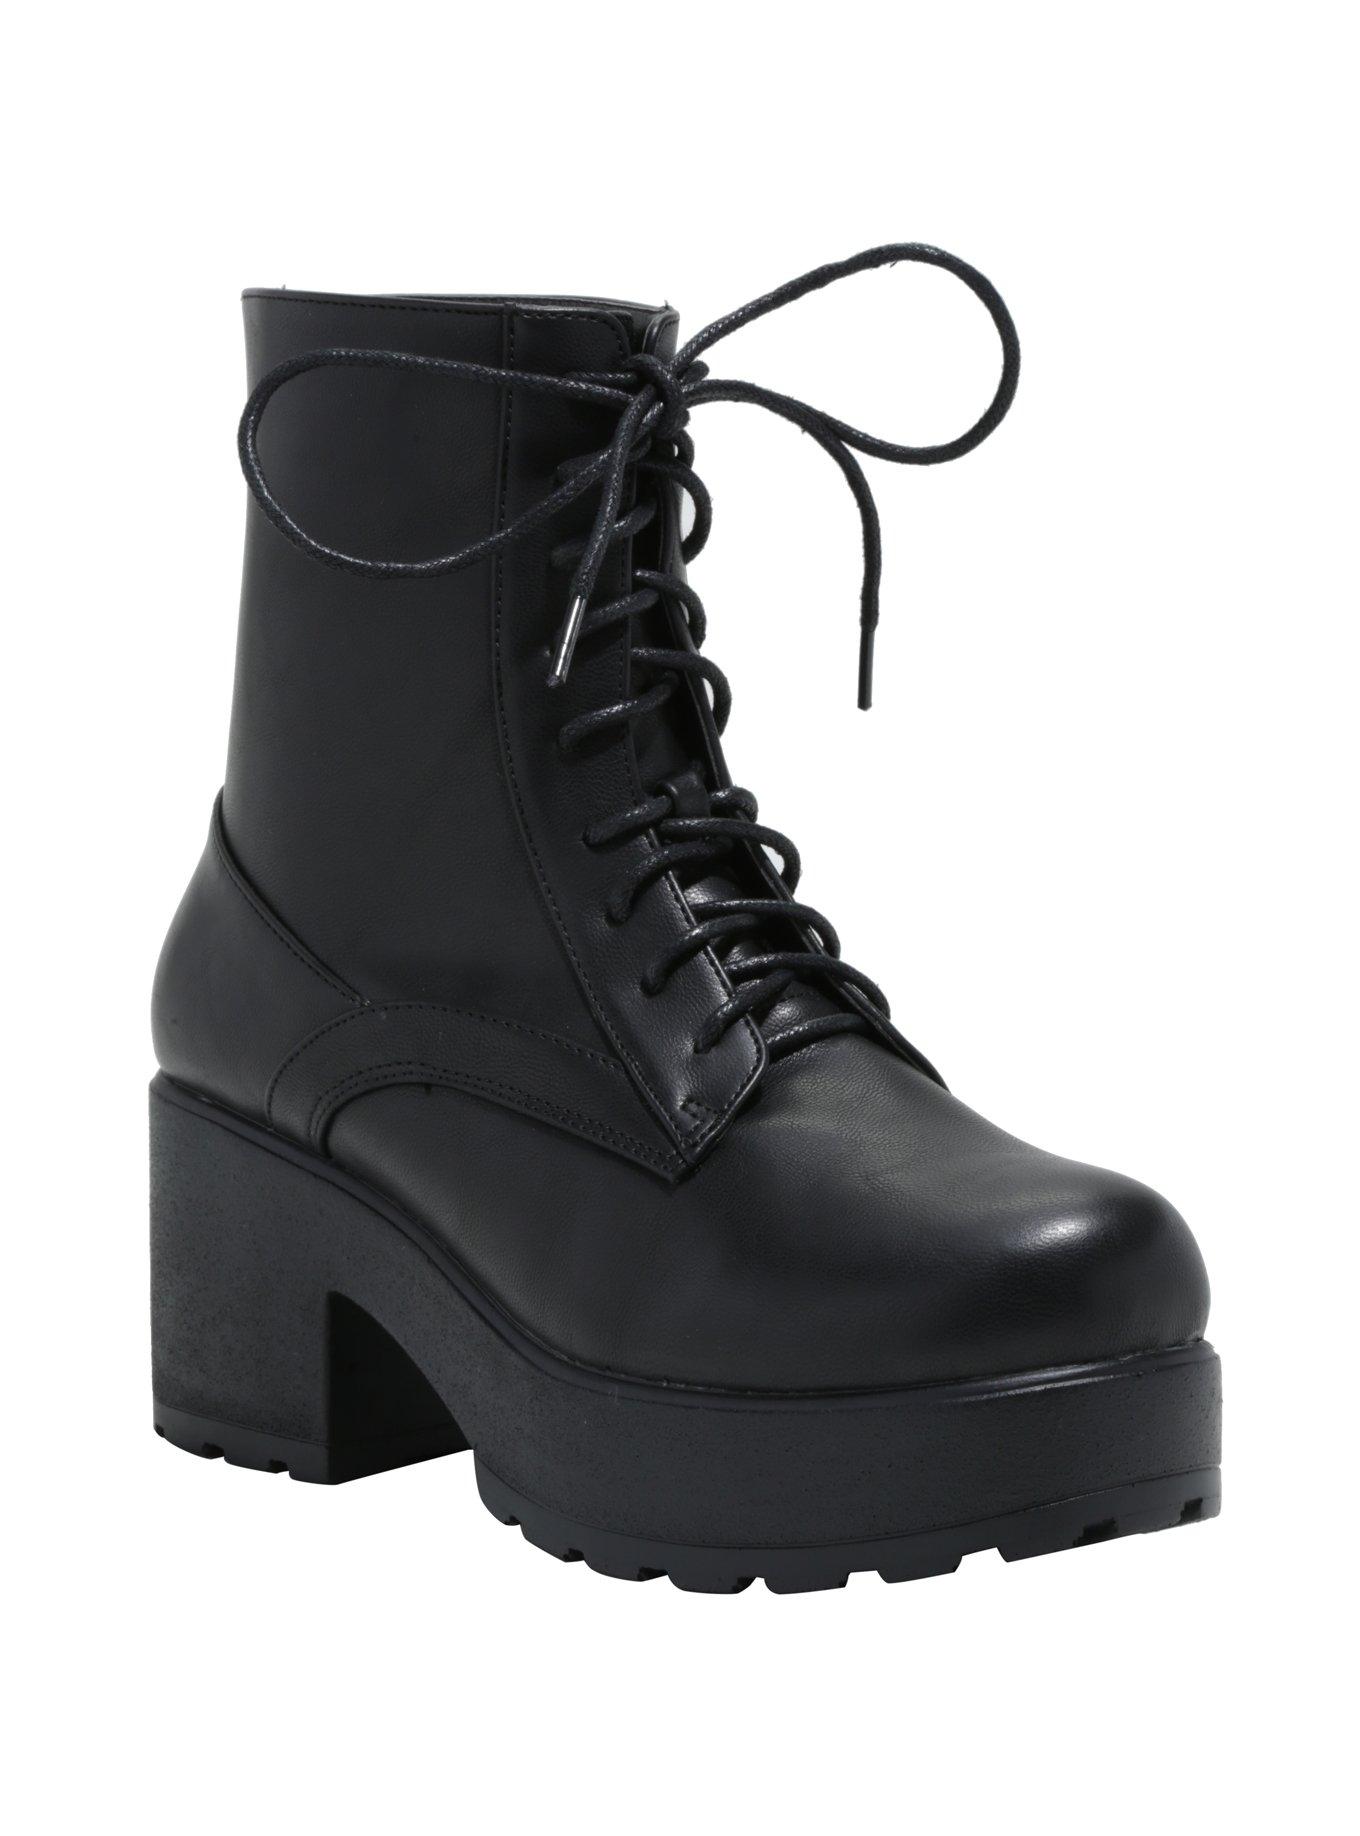 Black Wide Heel Lace-Up Boots, BLACK, hi-res